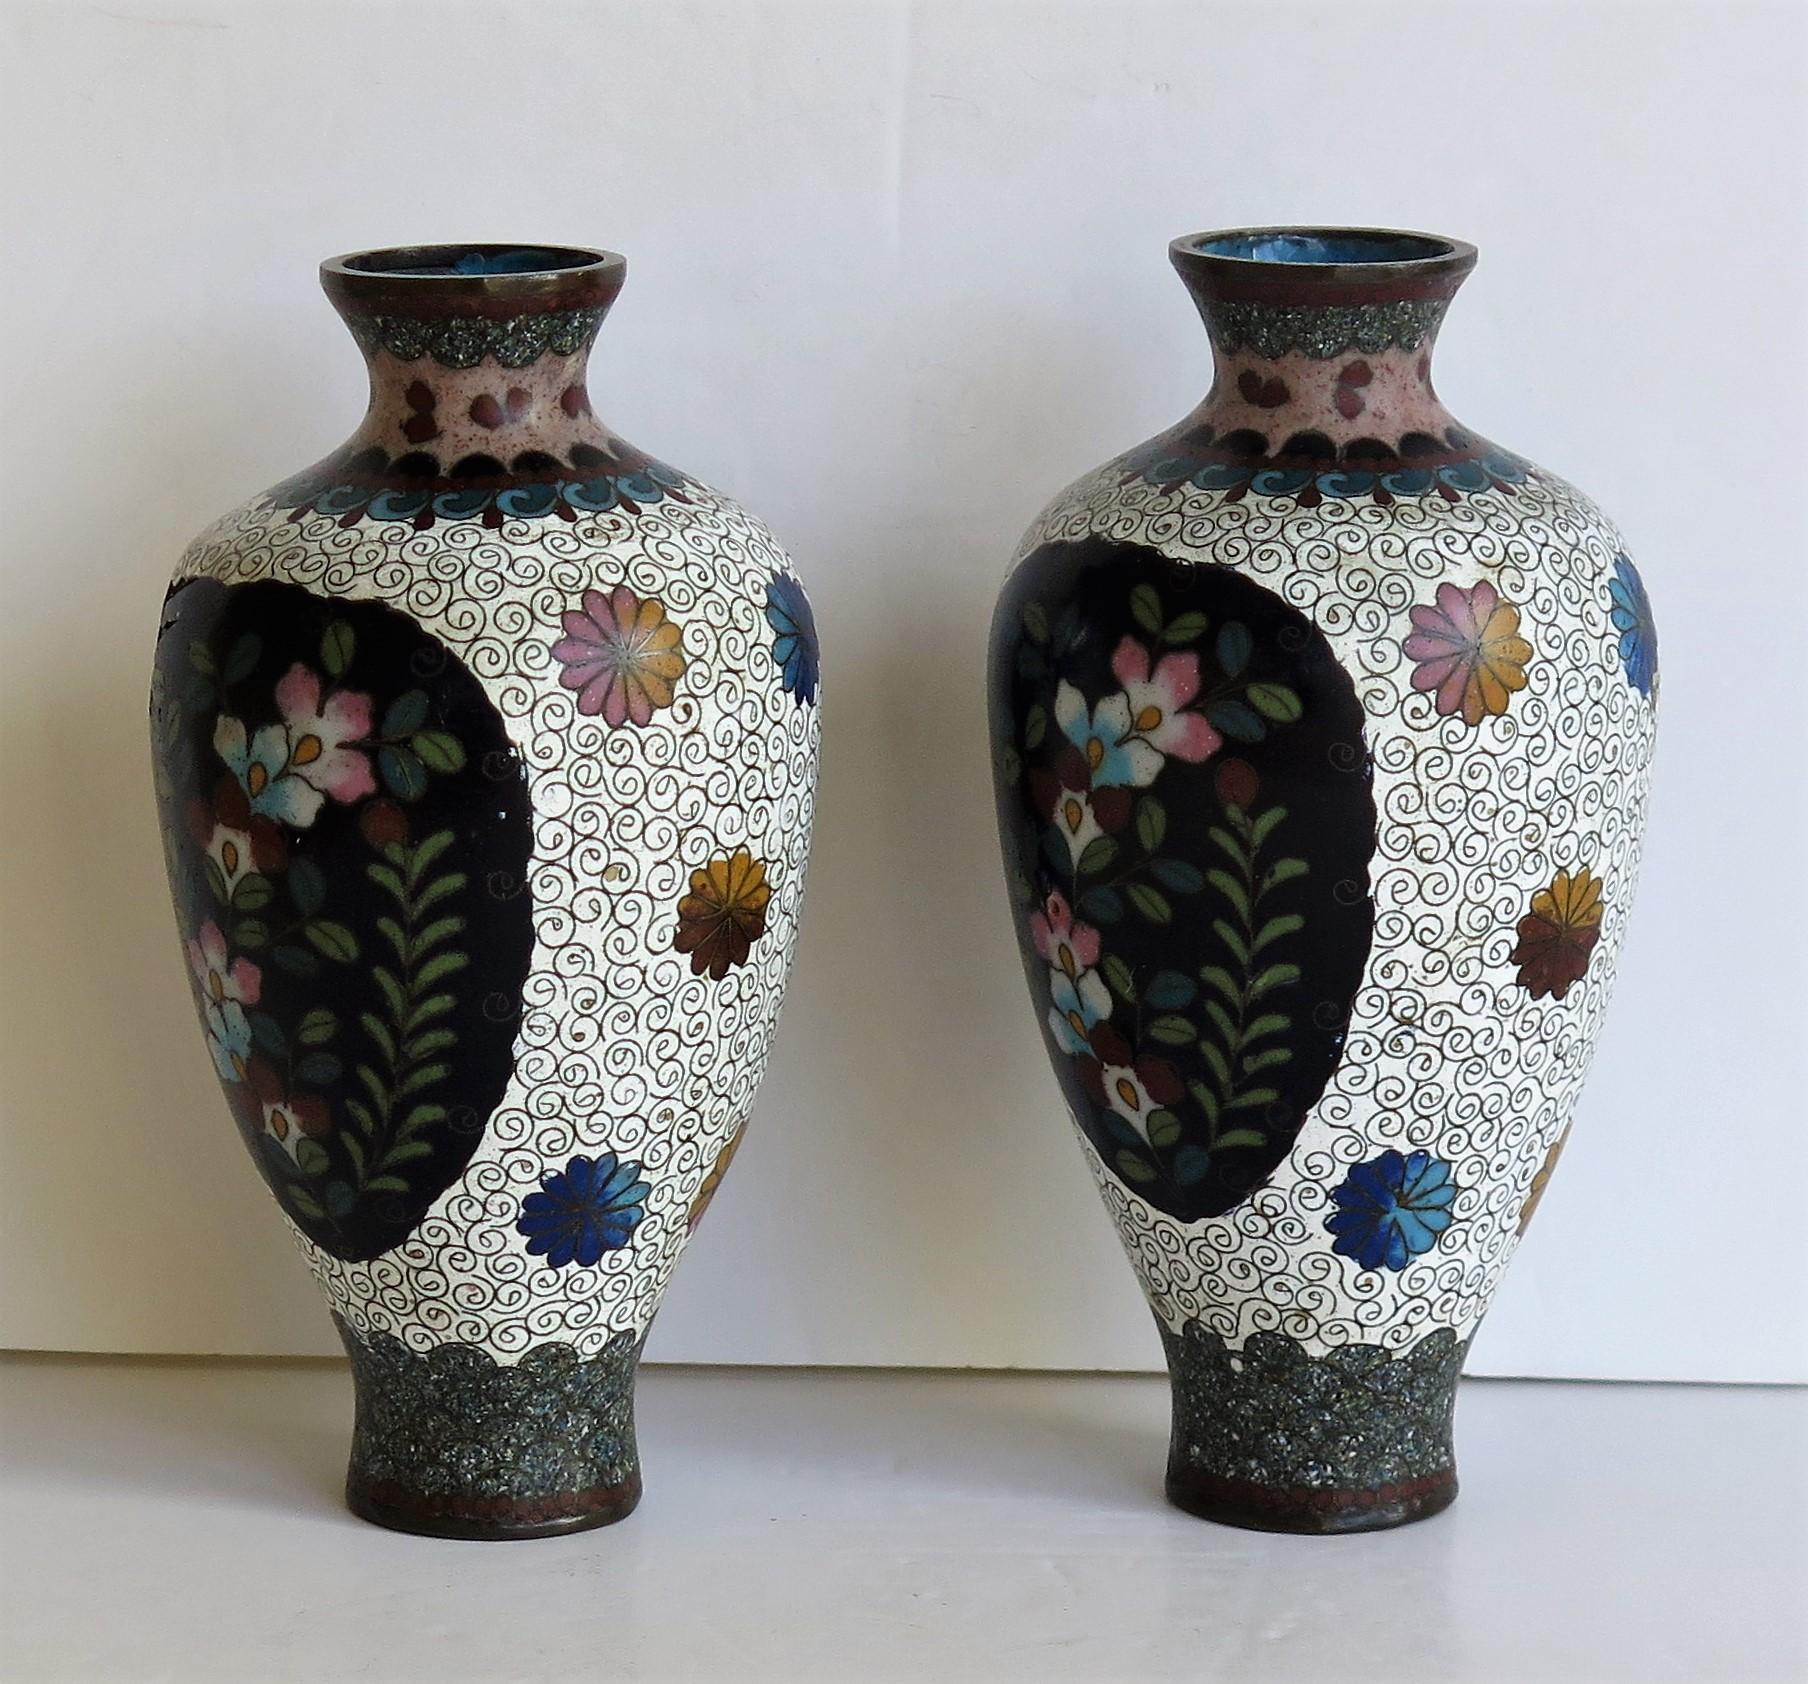 Ceramic Japanese Cloisonné Vases Butterflies & Flowers, 19th Century Meiji Period, Pair For Sale